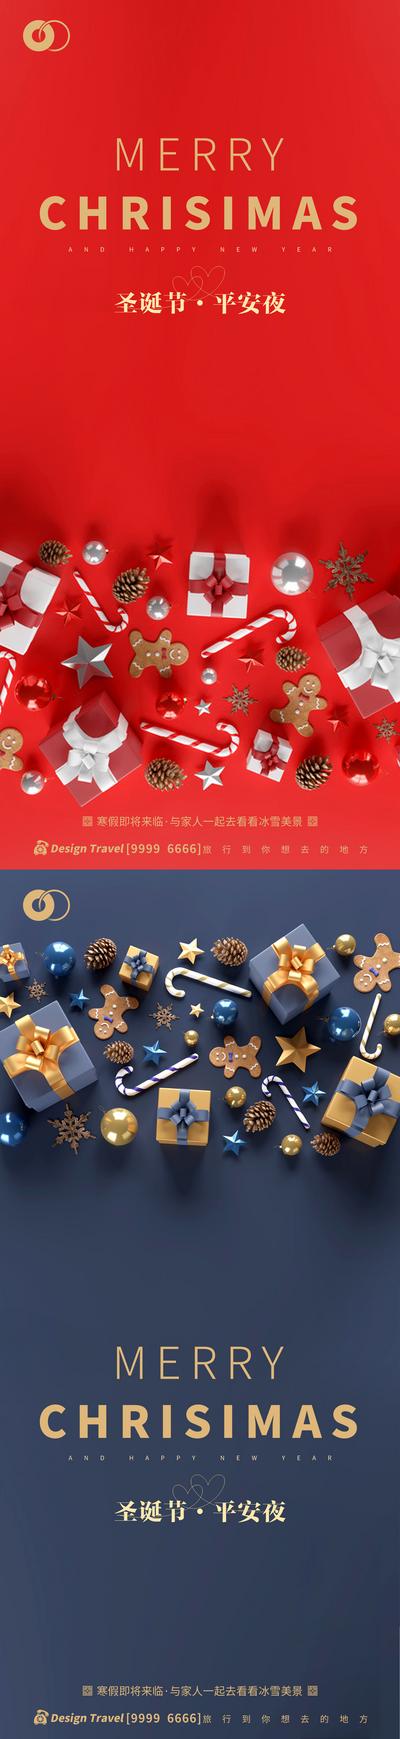 南门网 广告 海报 系列 圣诞节 简约 西方节日 平安夜